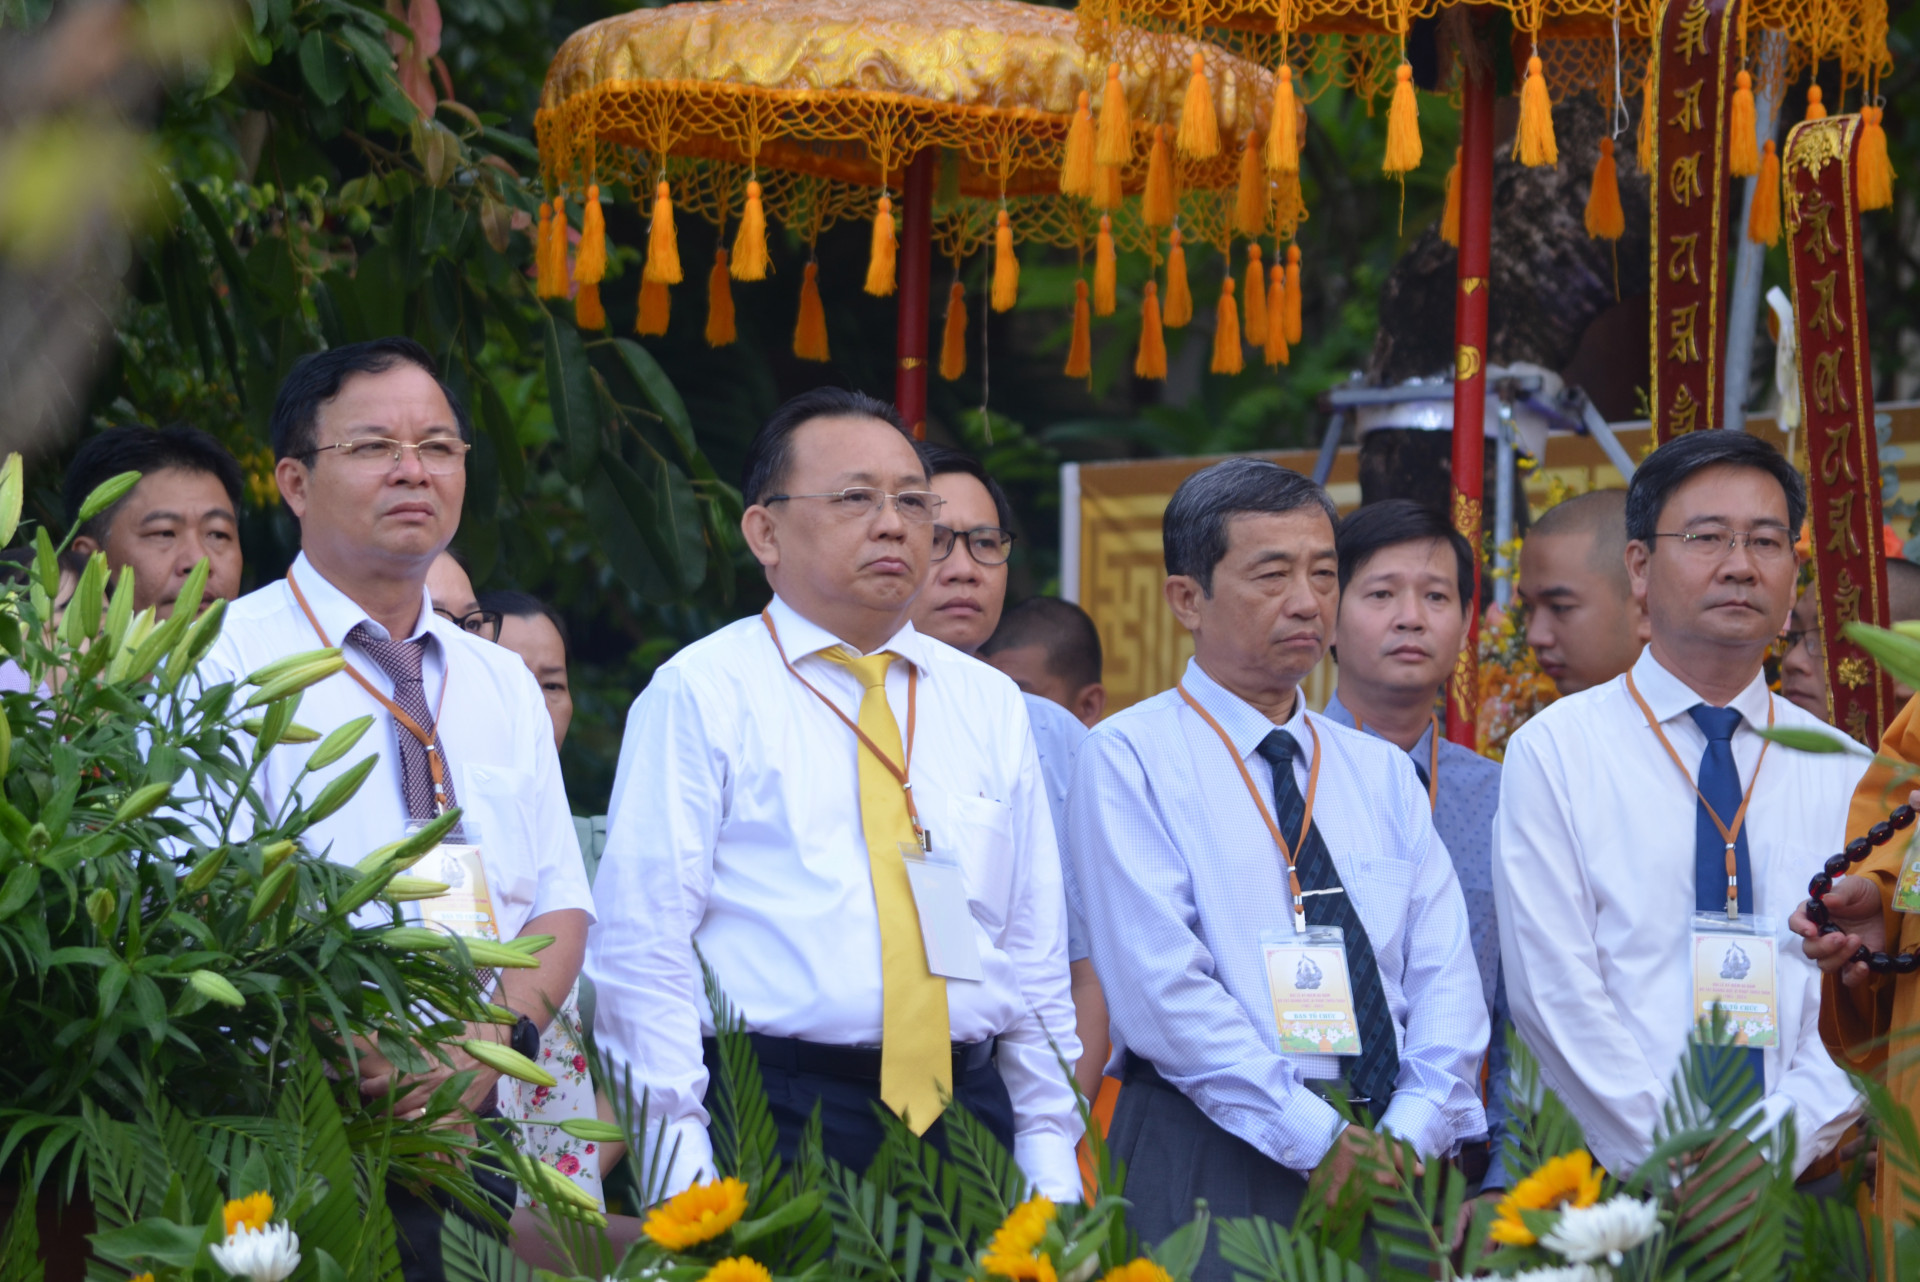 Đồng chí Lê Hữu Hoàng - Phó Chủ tịch Thường trực UBND tỉnh cùng lãnh đạo các sở, ban, ngành đến tham dự.